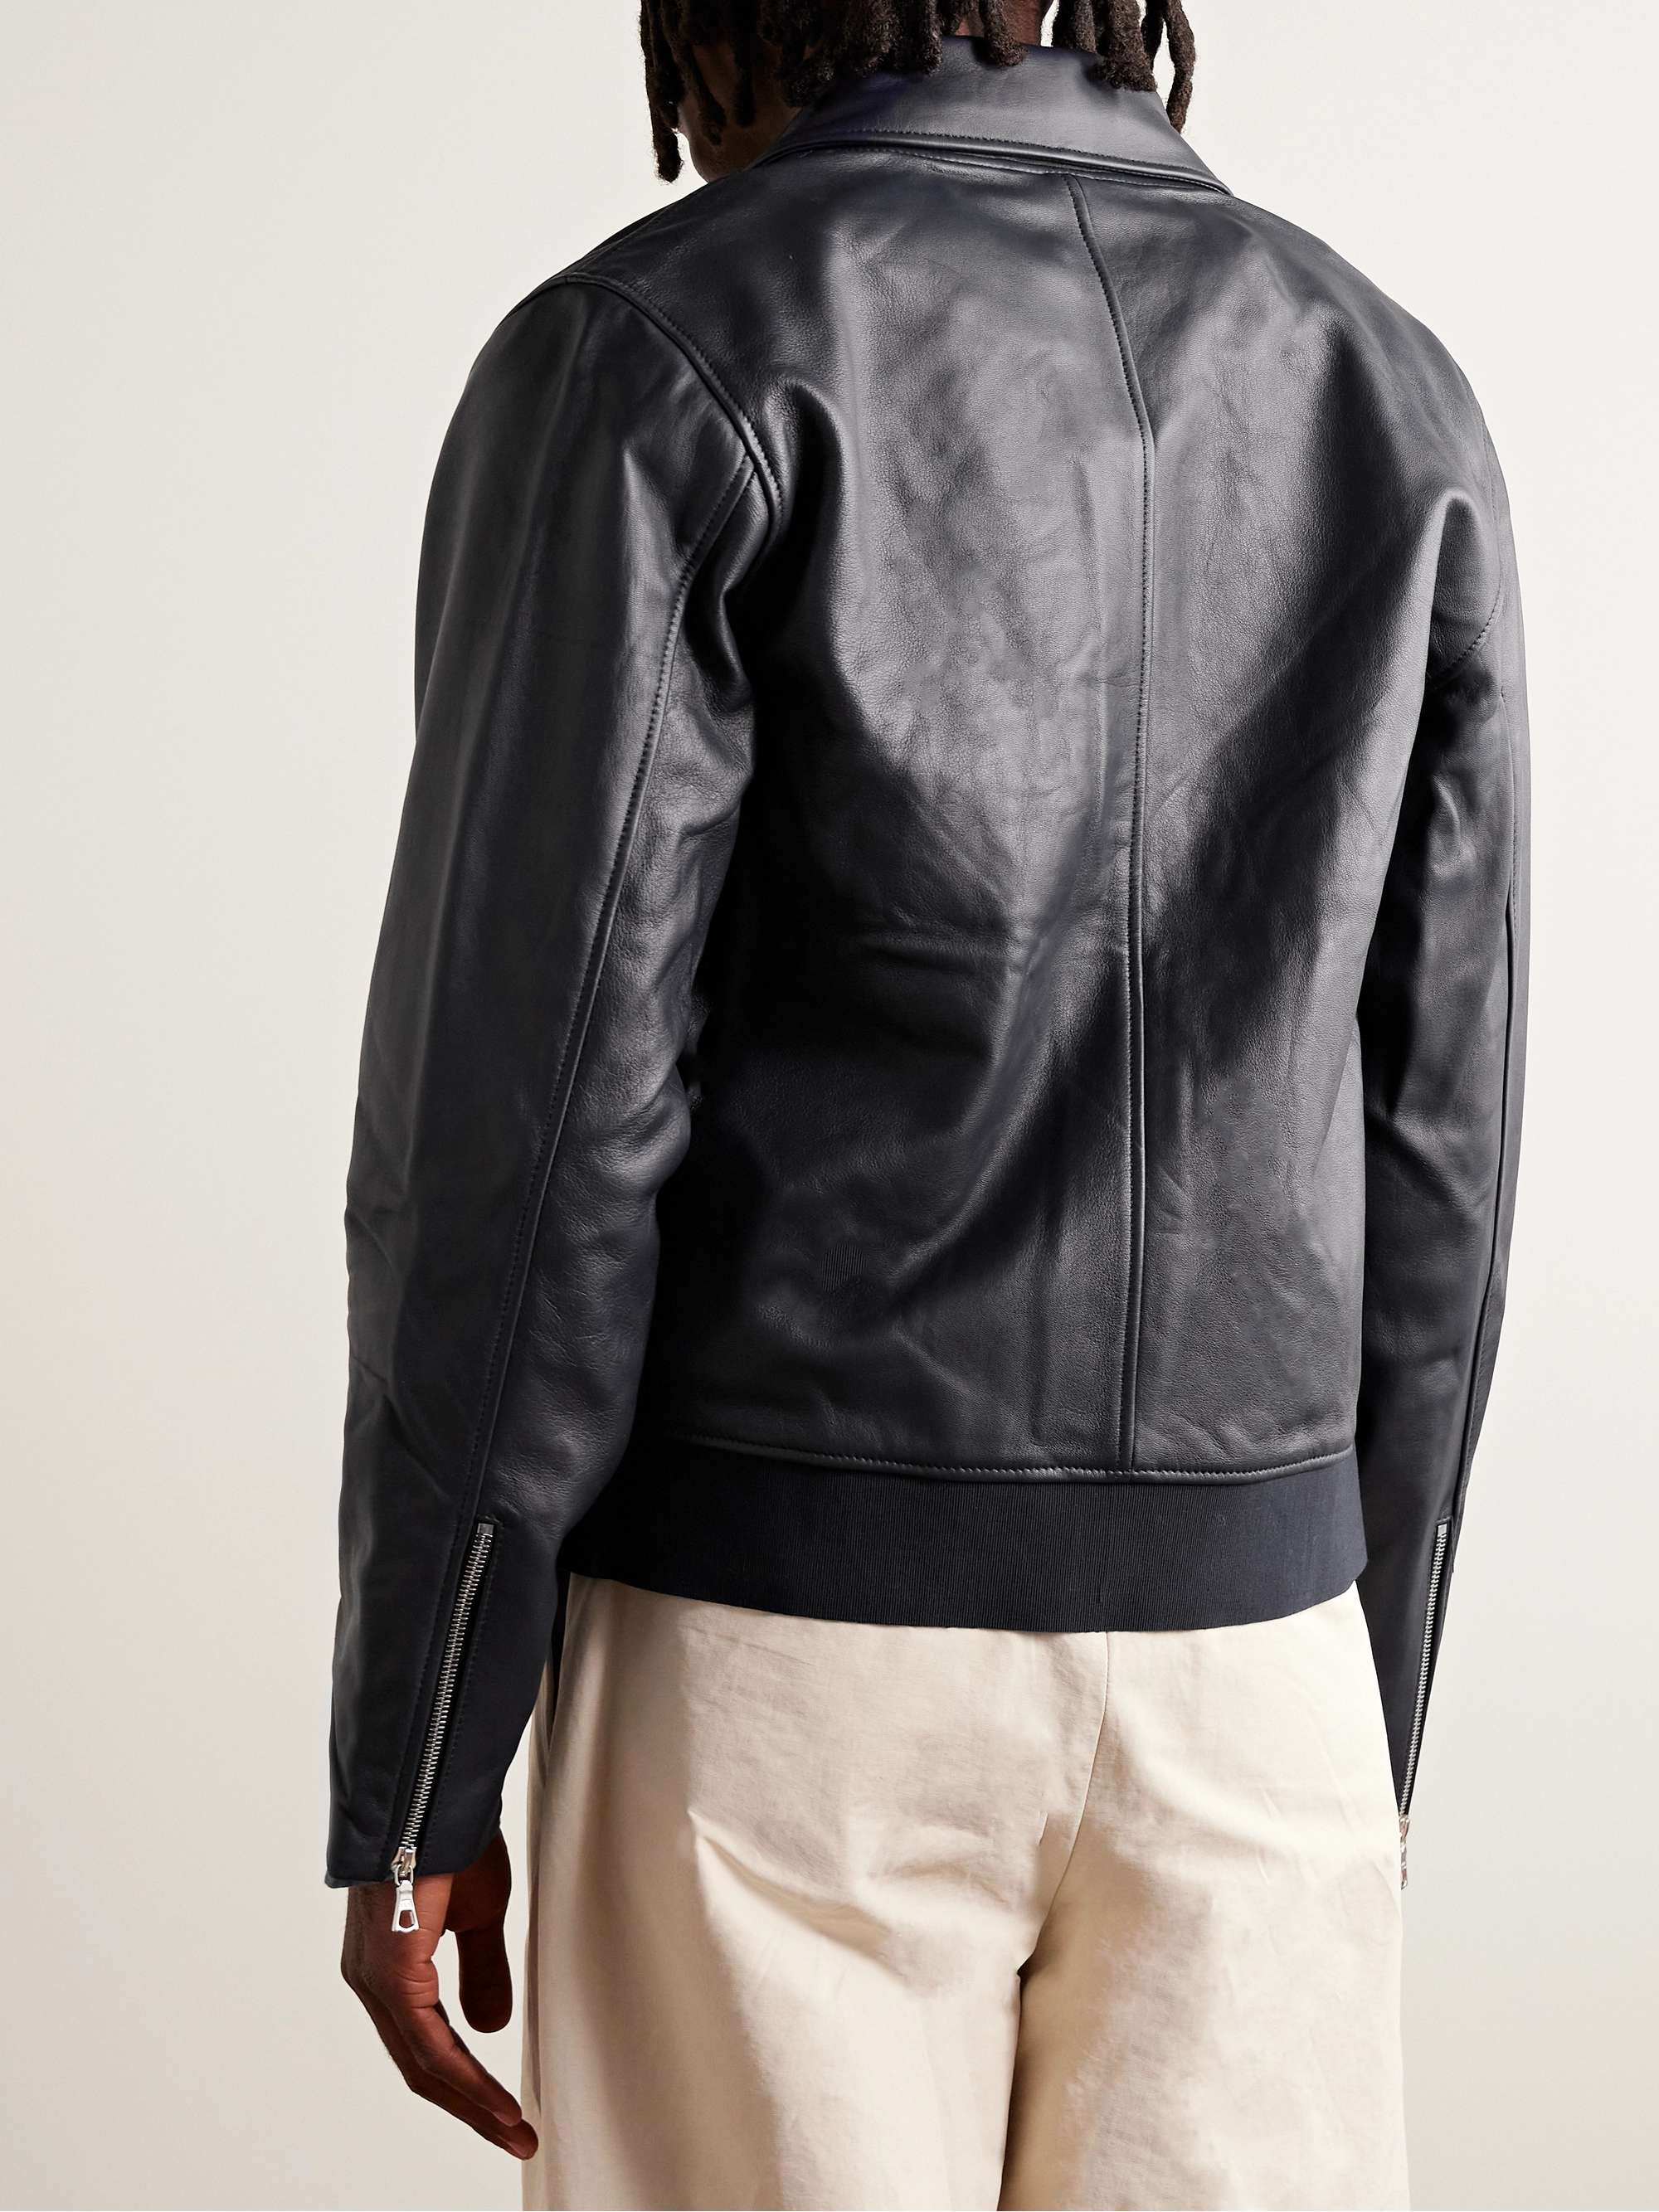 OFFICINE GÉNÉRALE Charles Slim-Fit Leather Jacket for Men | MR PORTER